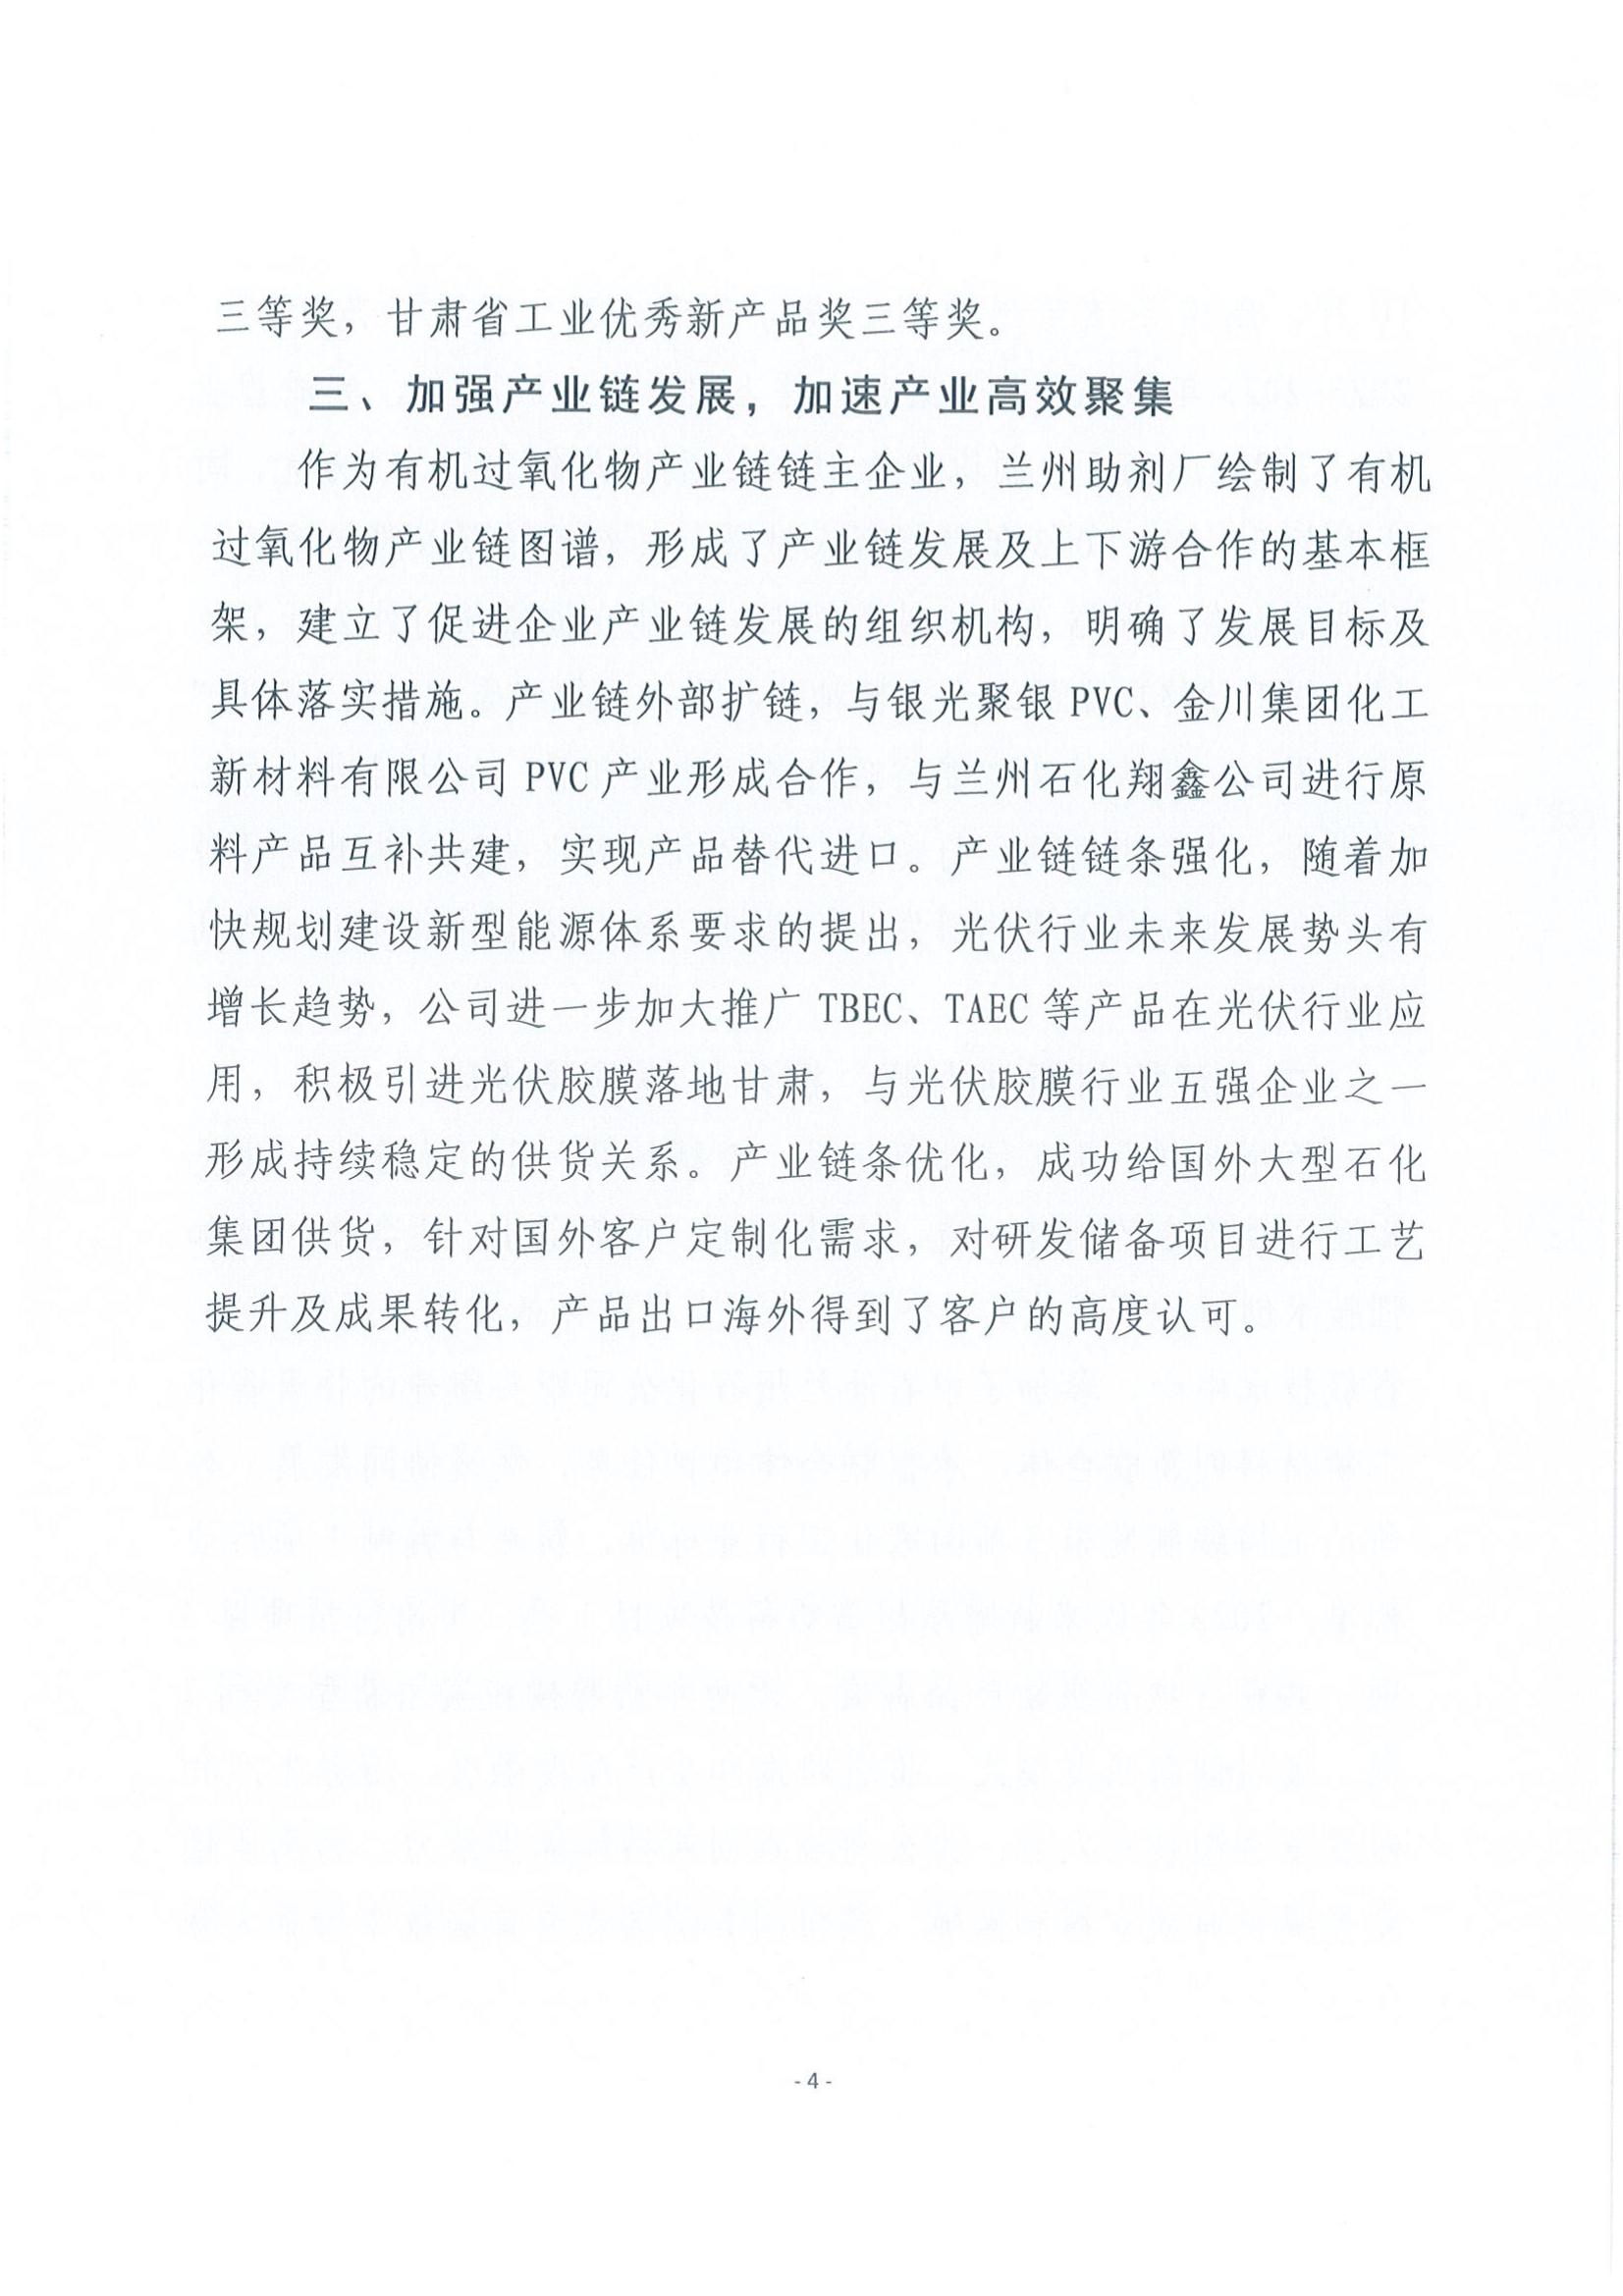 皇冠游戏在线平台工会关于推荐甘肃省五一劳动奖状的公示_03.jpg